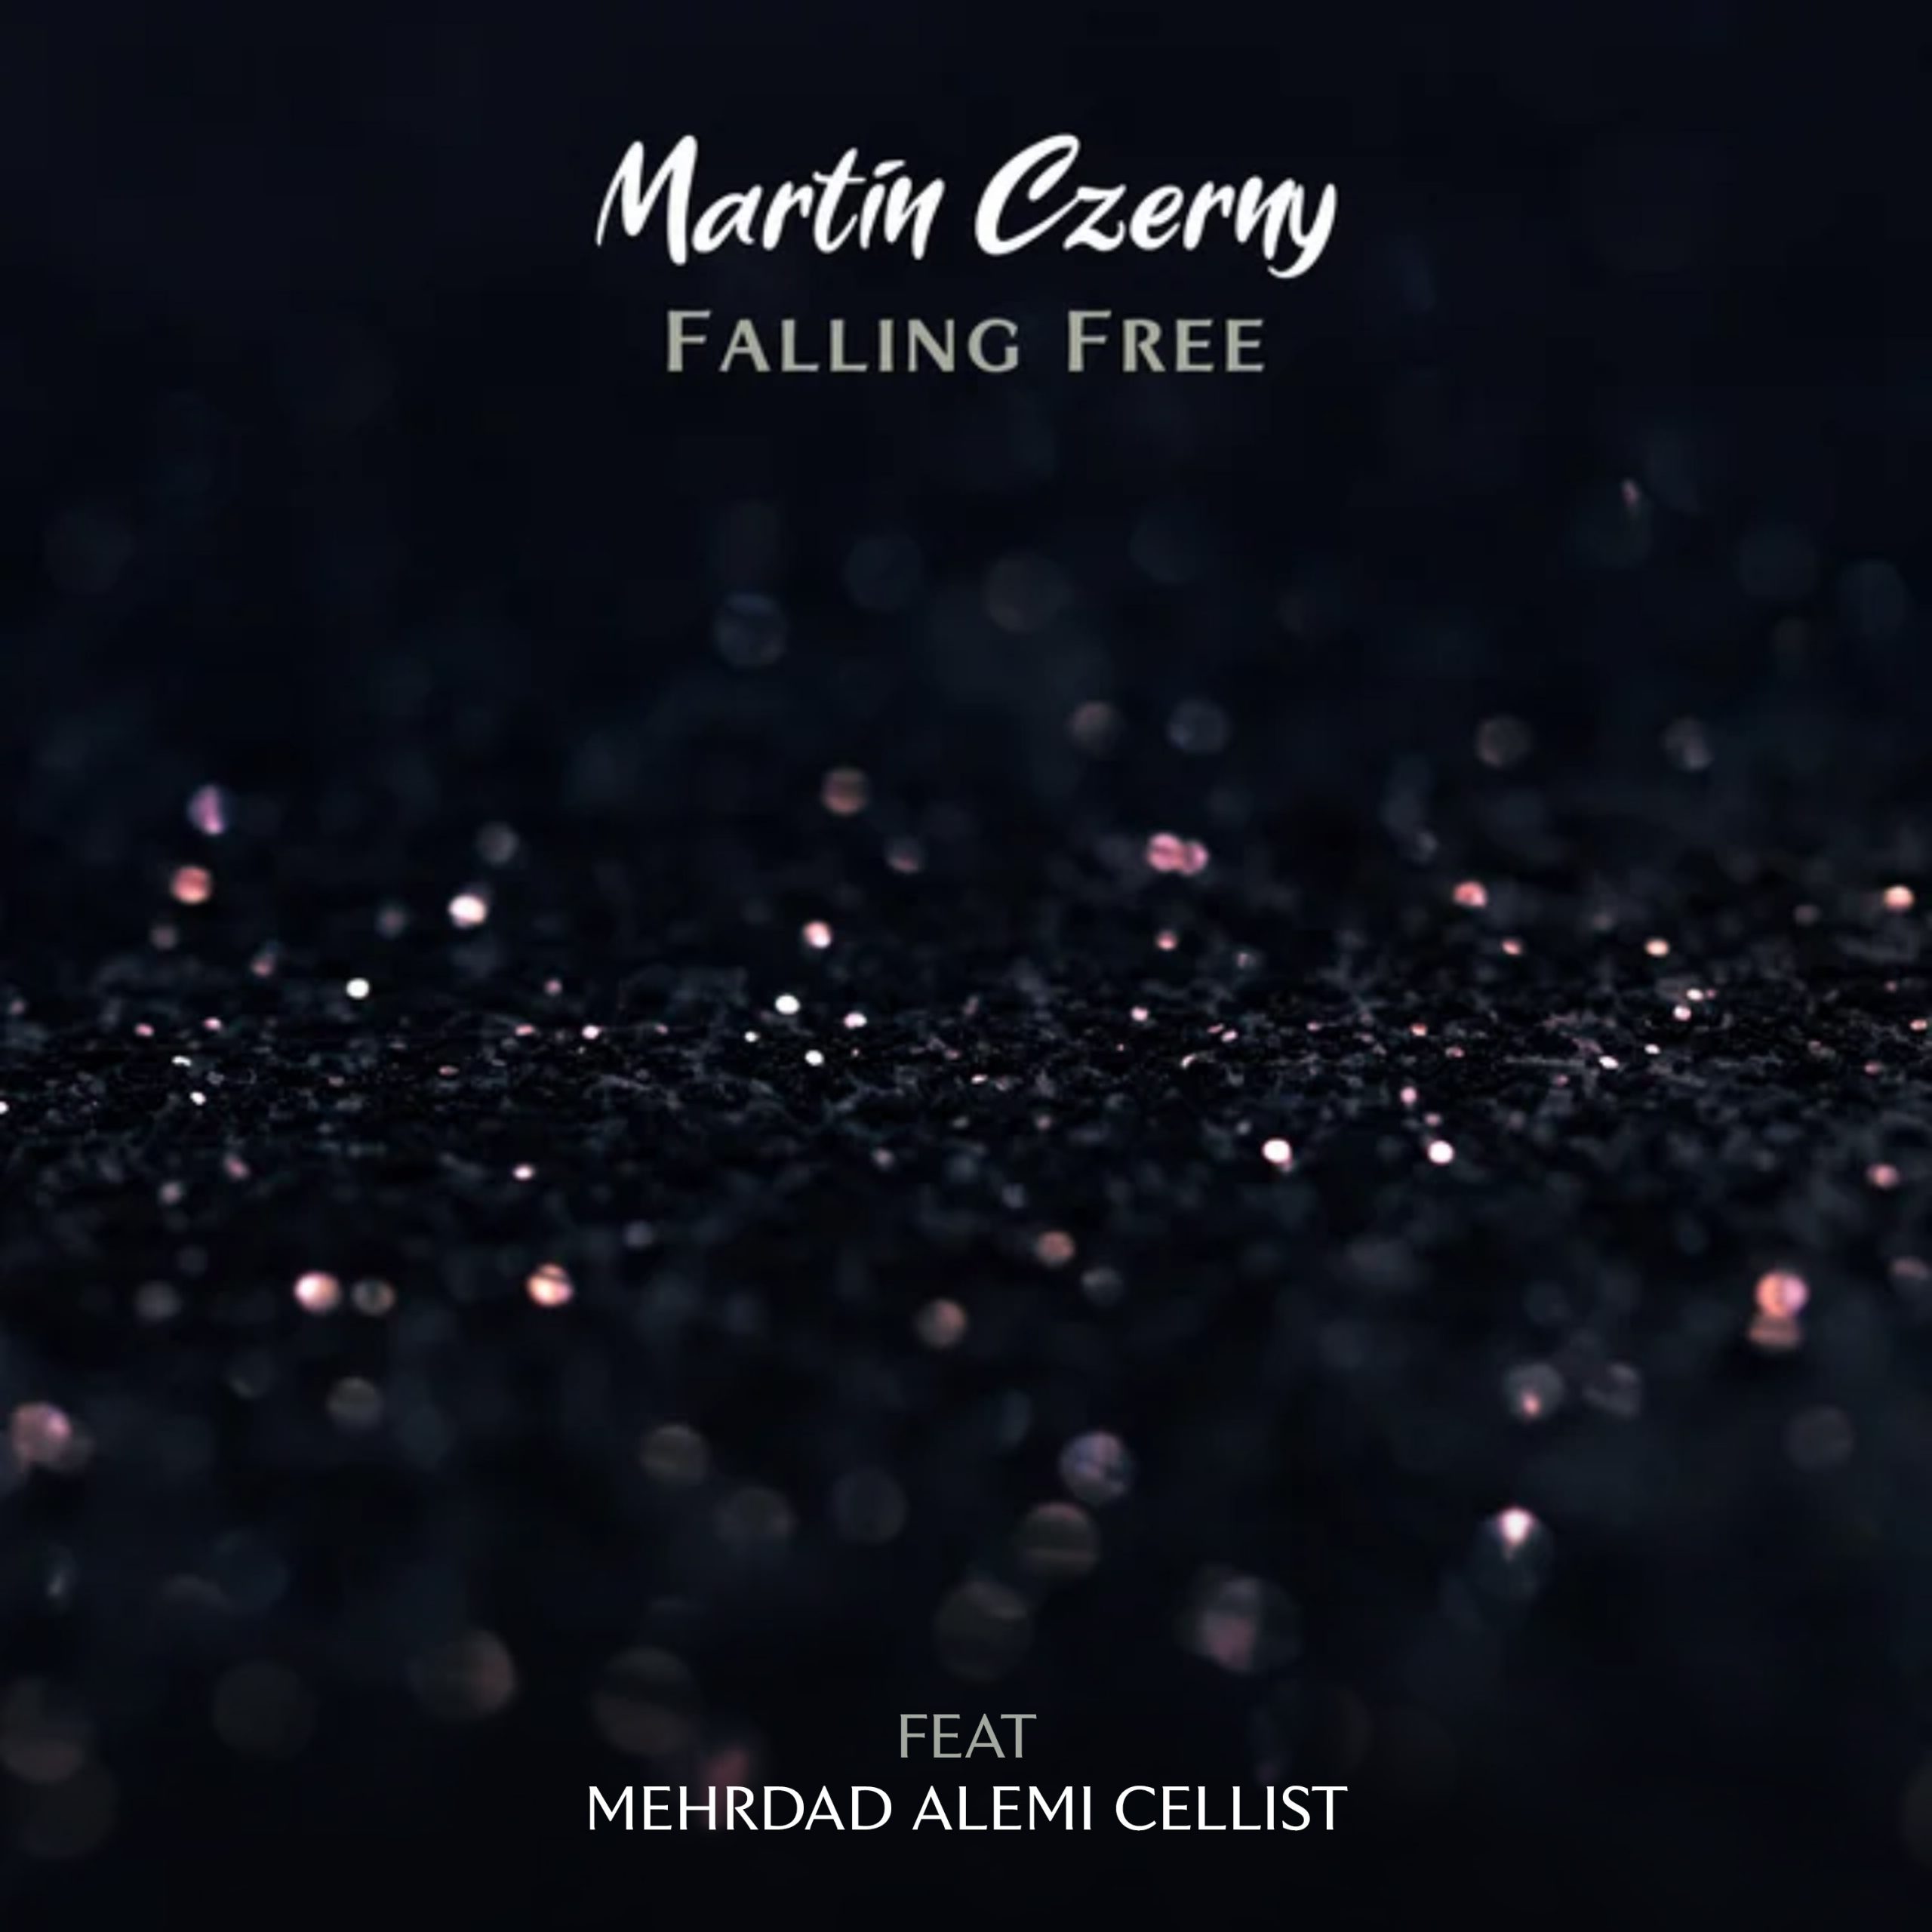 دانلود آهنگ مهرداد عالمی  و Martin Czerny  به نام Falling Free